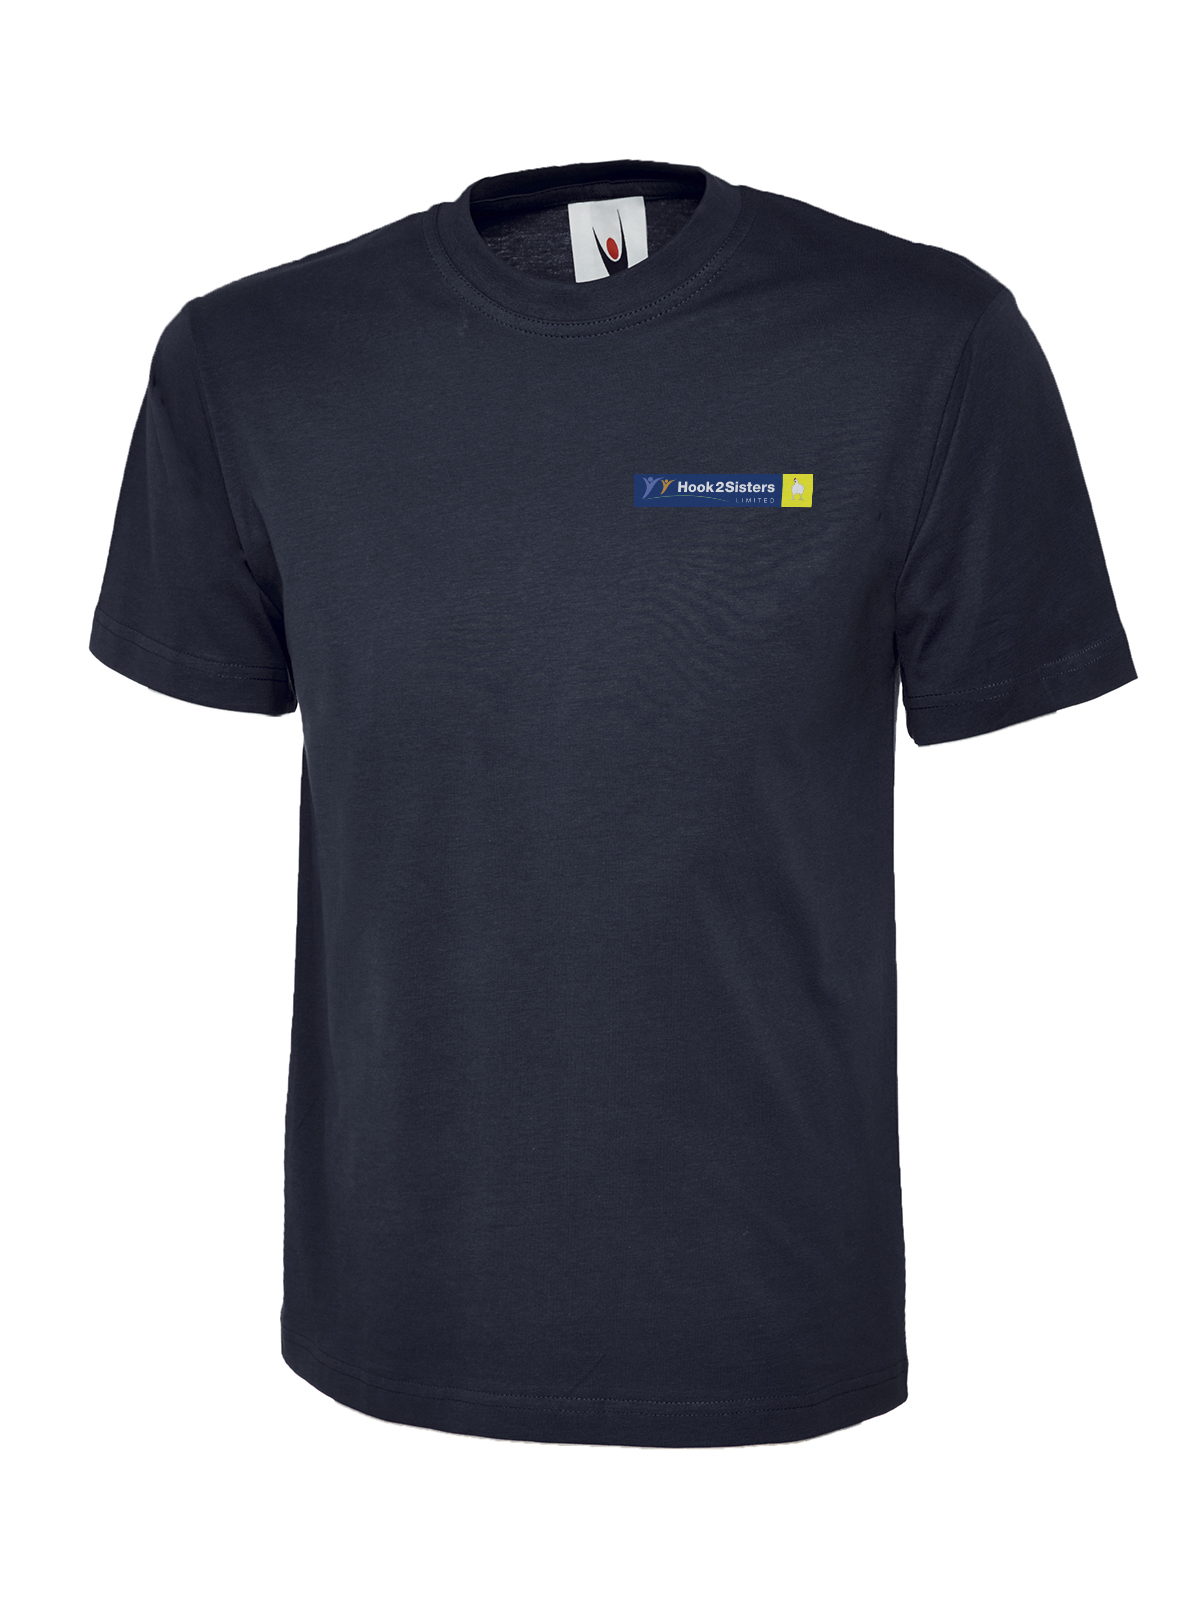 Hook2Sisters Ltd - T-Shirt, Navy - Size XL